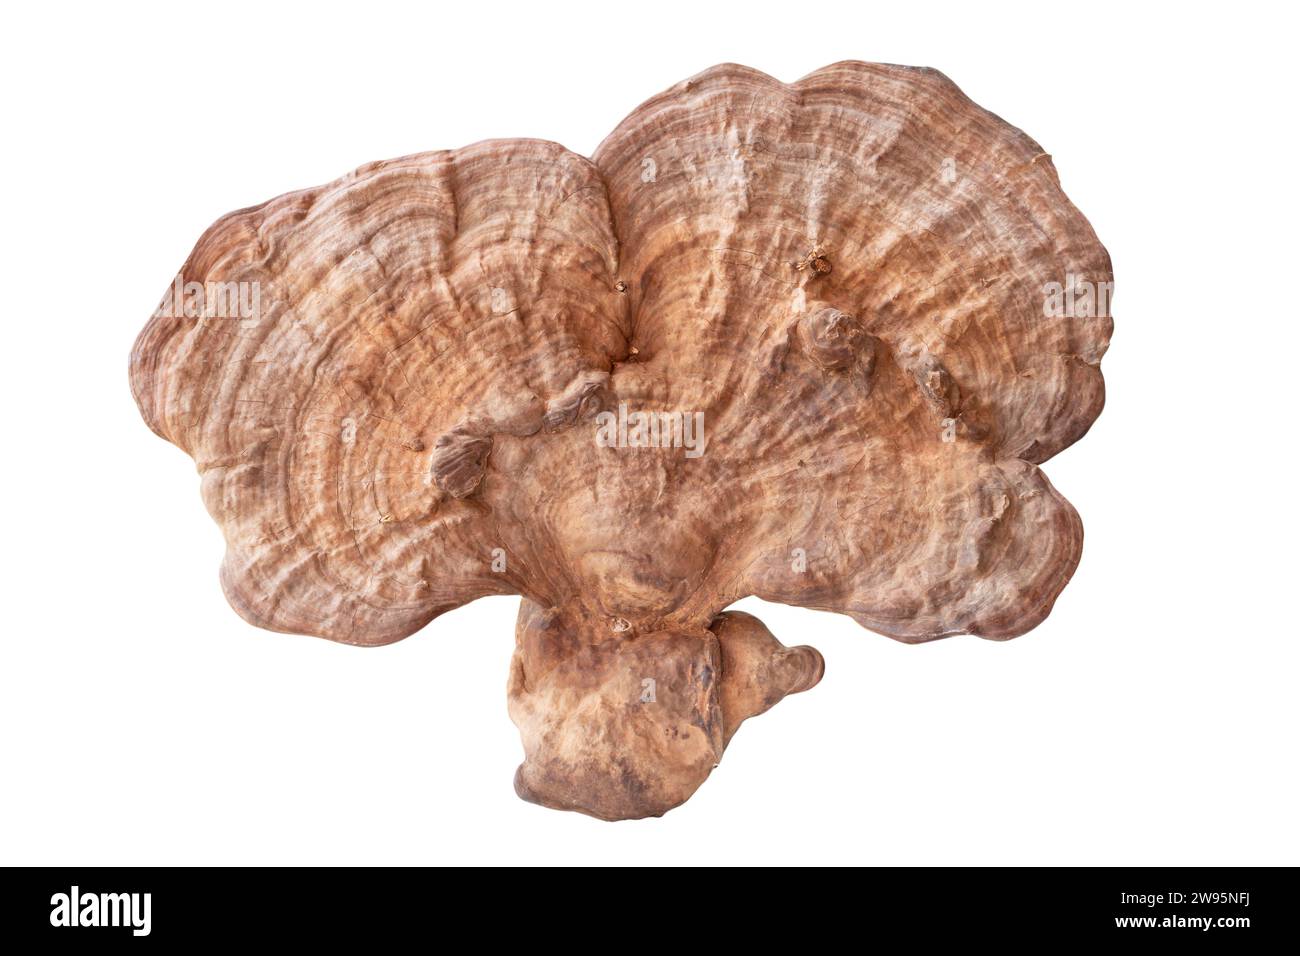 Il fungo reishi asciutto grande e utile è isolato su sfondo bianco con percorso di ritaglio. Fungo di medicina cinese Foto Stock